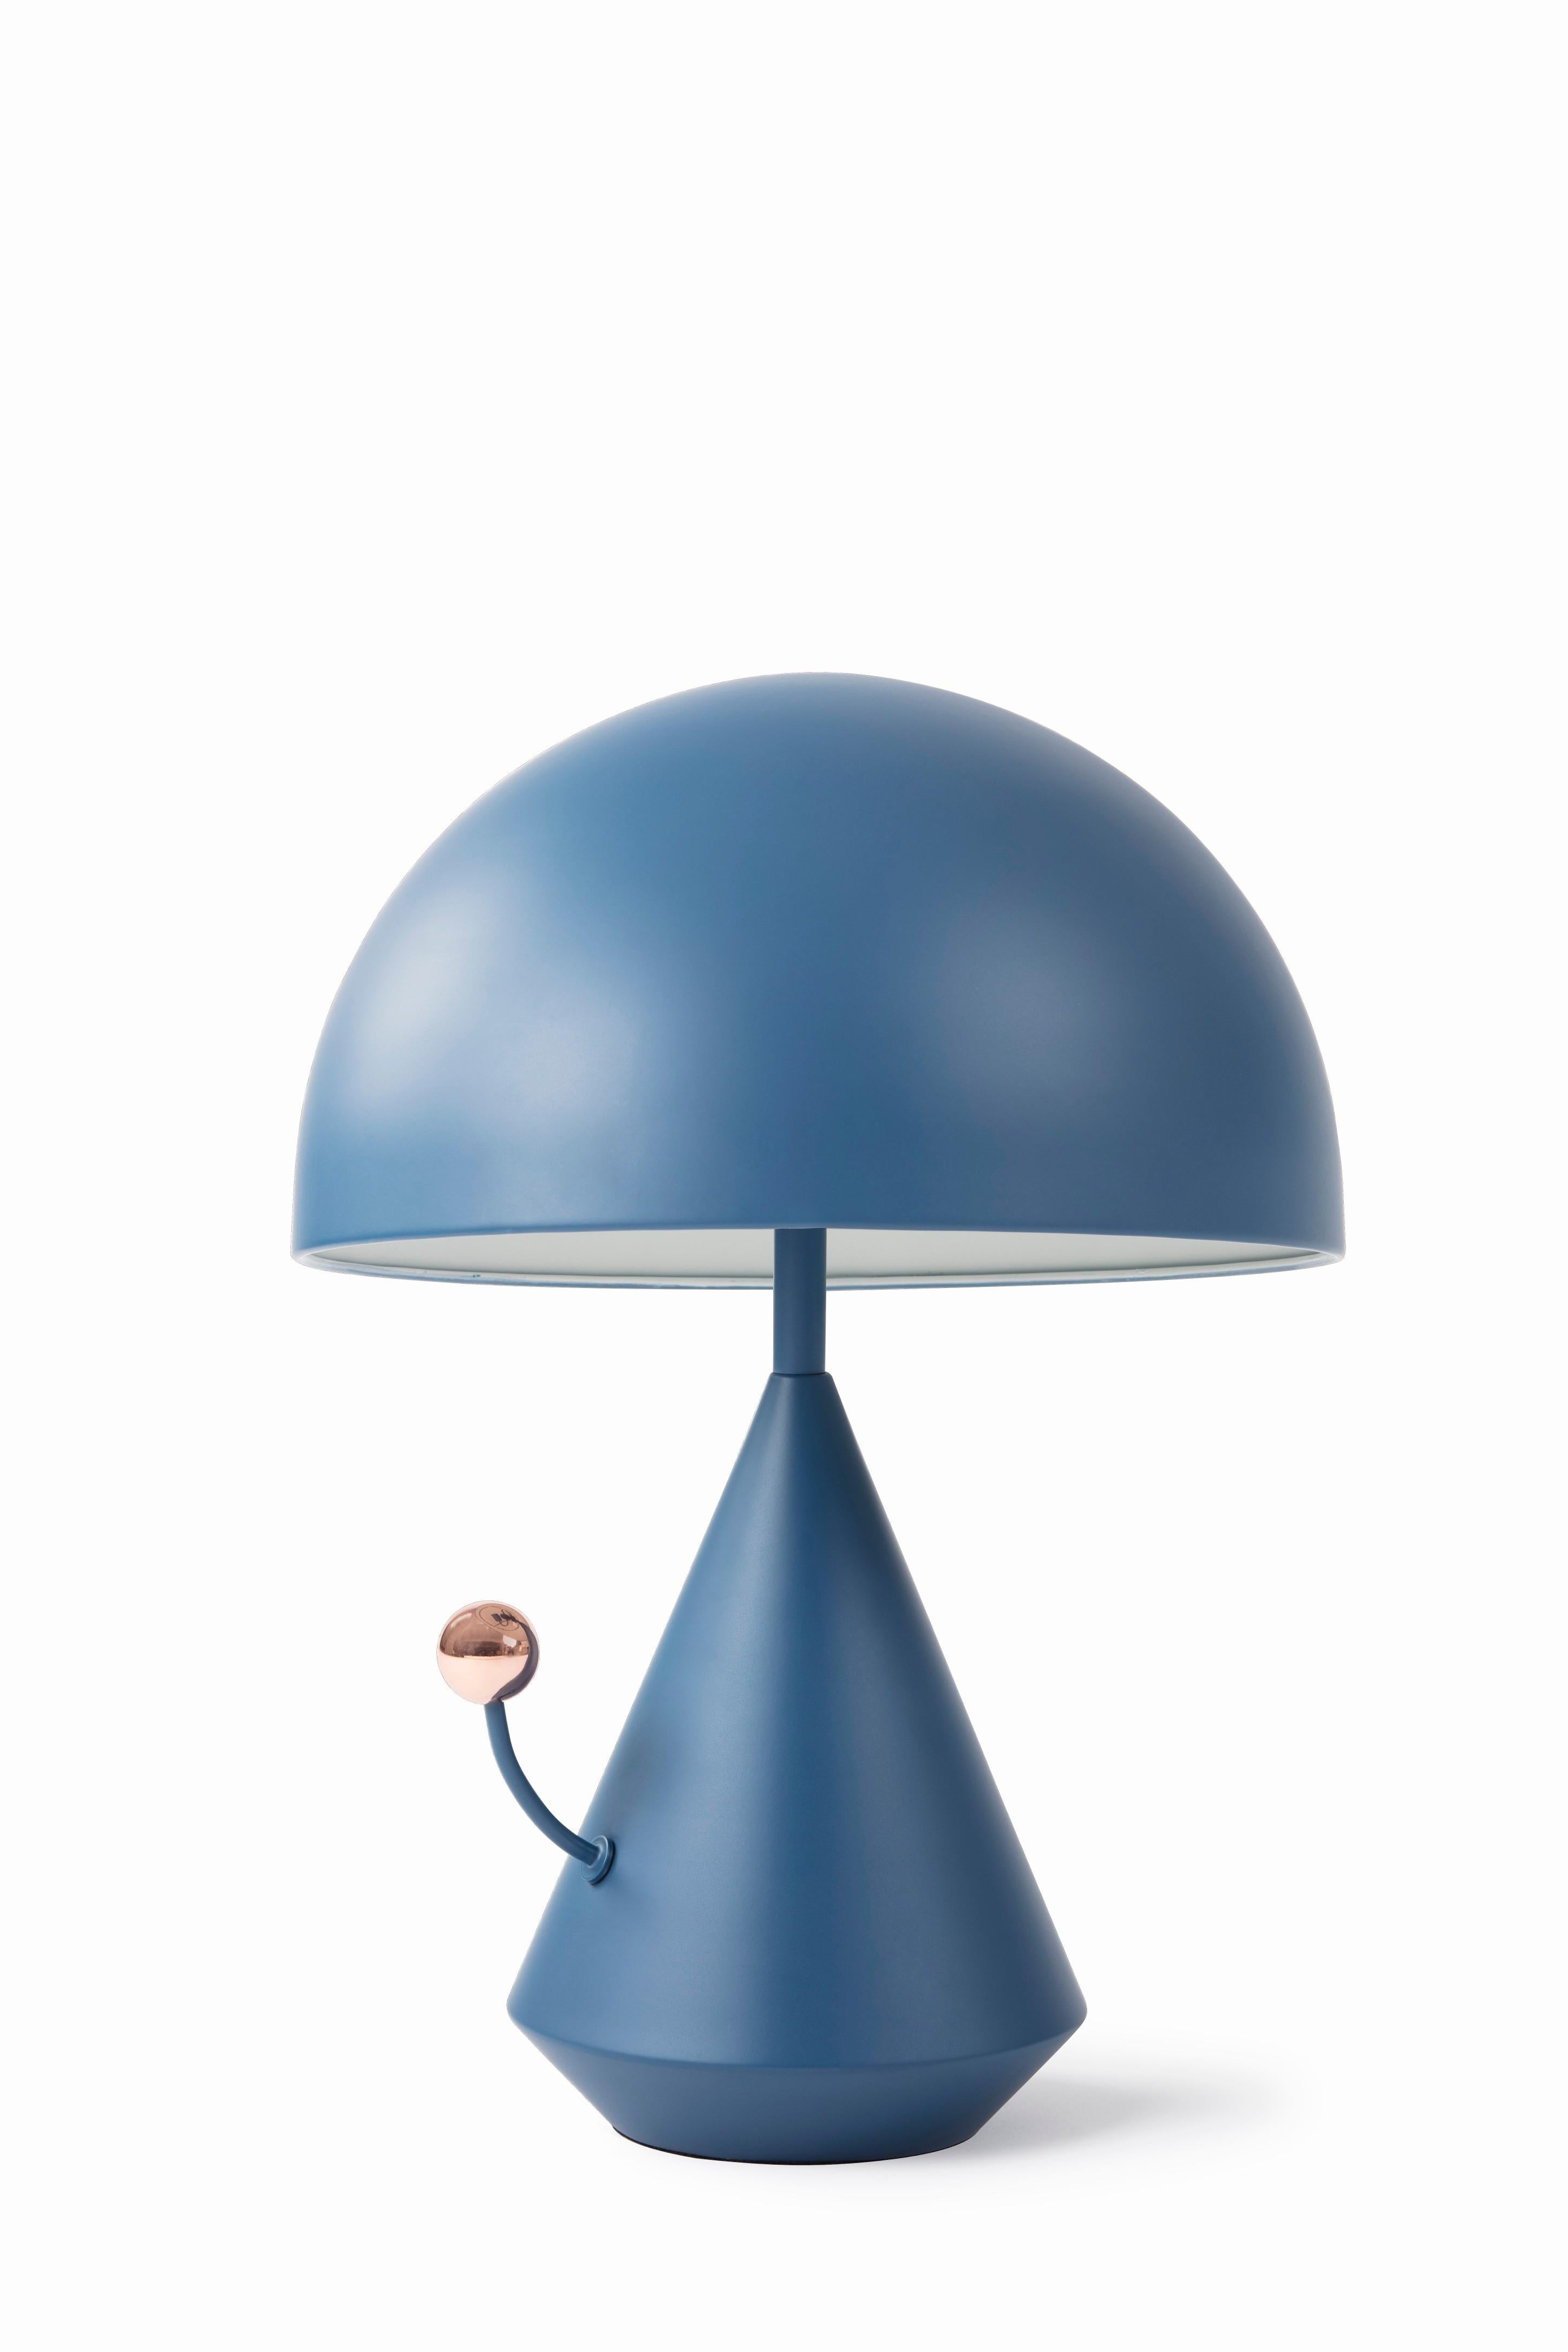 Lampe de table surréaliste DADA par Thomas Dariel, Maison DADA
Dimensions : diamètre 31,5 x hauteur 43 cm
Tricolore
Abat-jour, base et cadre en métal peint par poudrage
Interrupteur tactile en finition couleur
220V - 240V 50Hz E27 max.